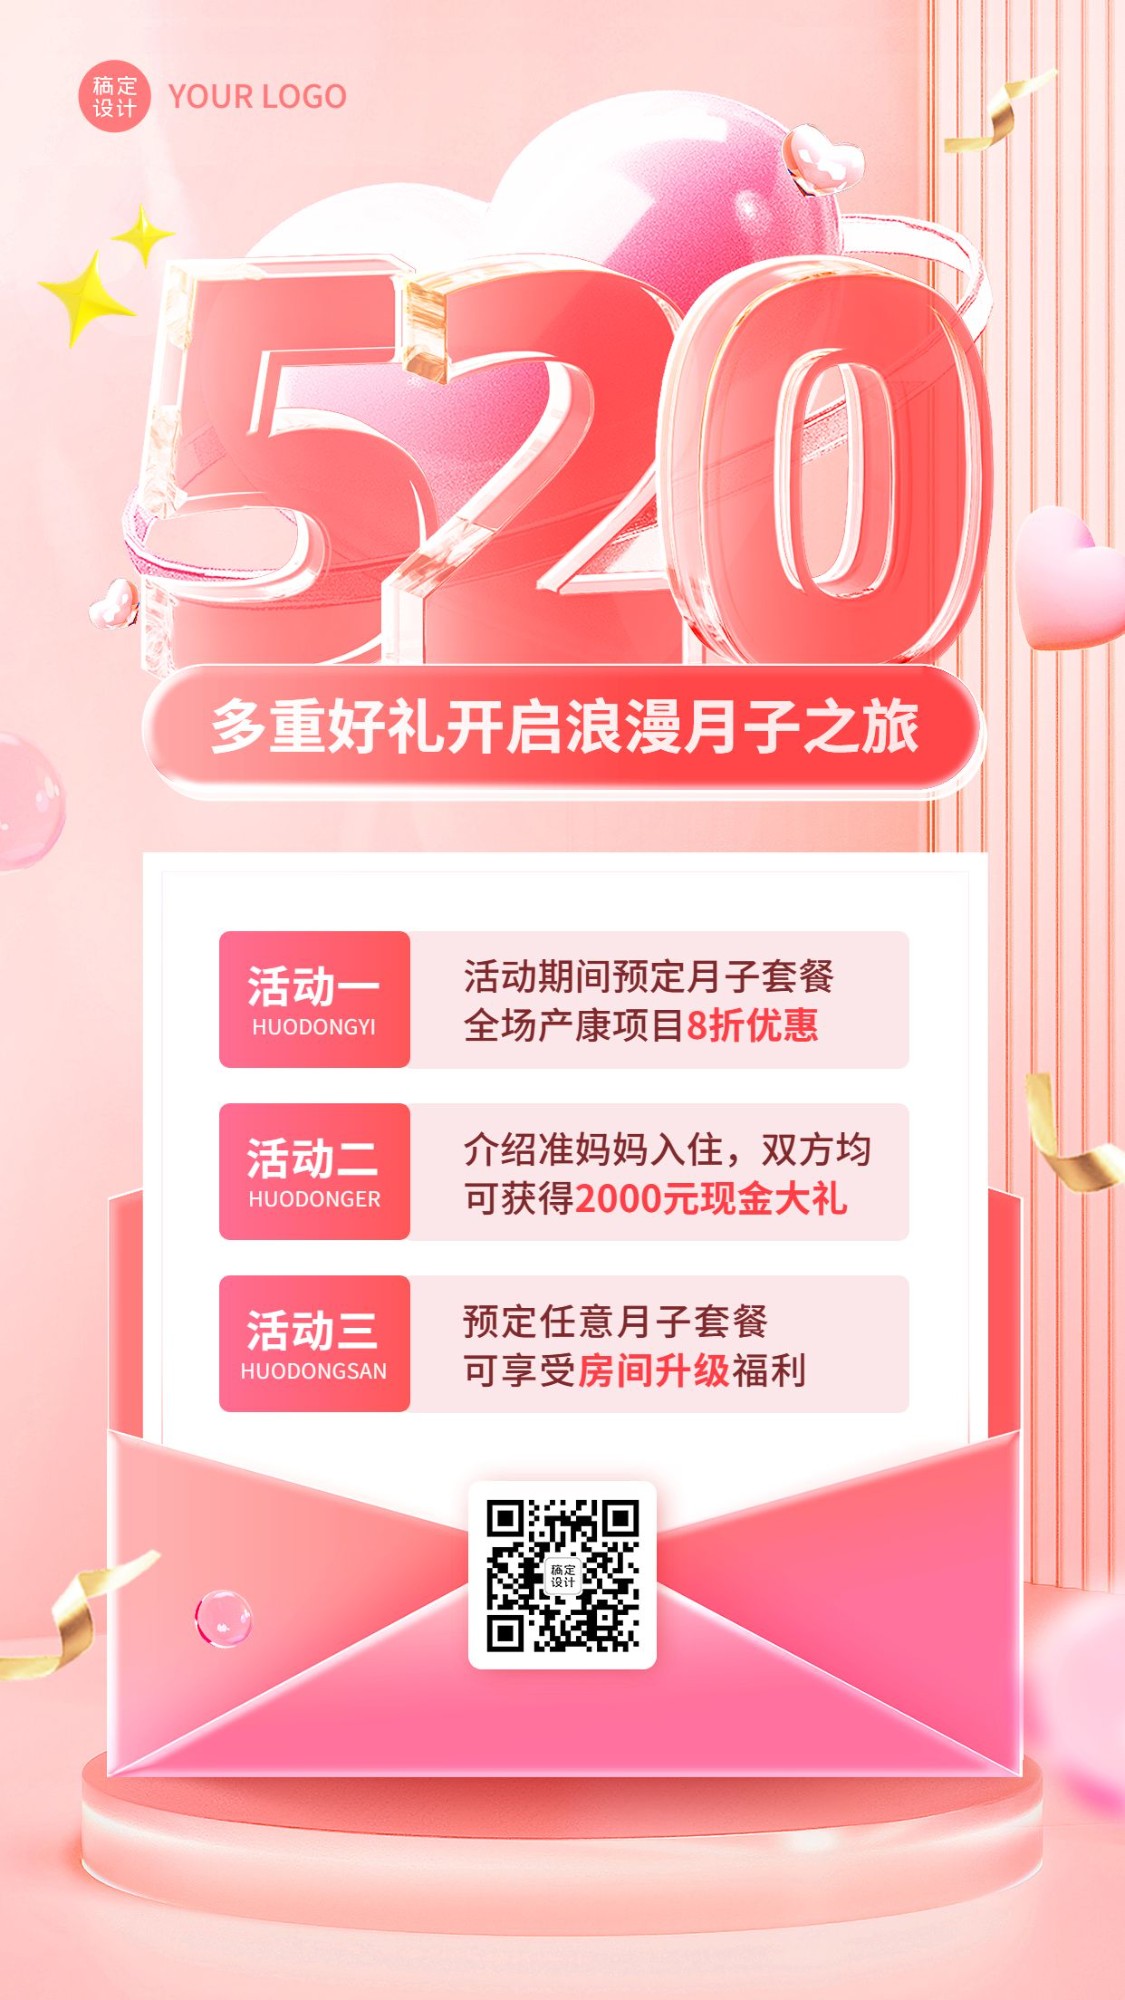 520情人节月子中心节日营销手机海报预览效果